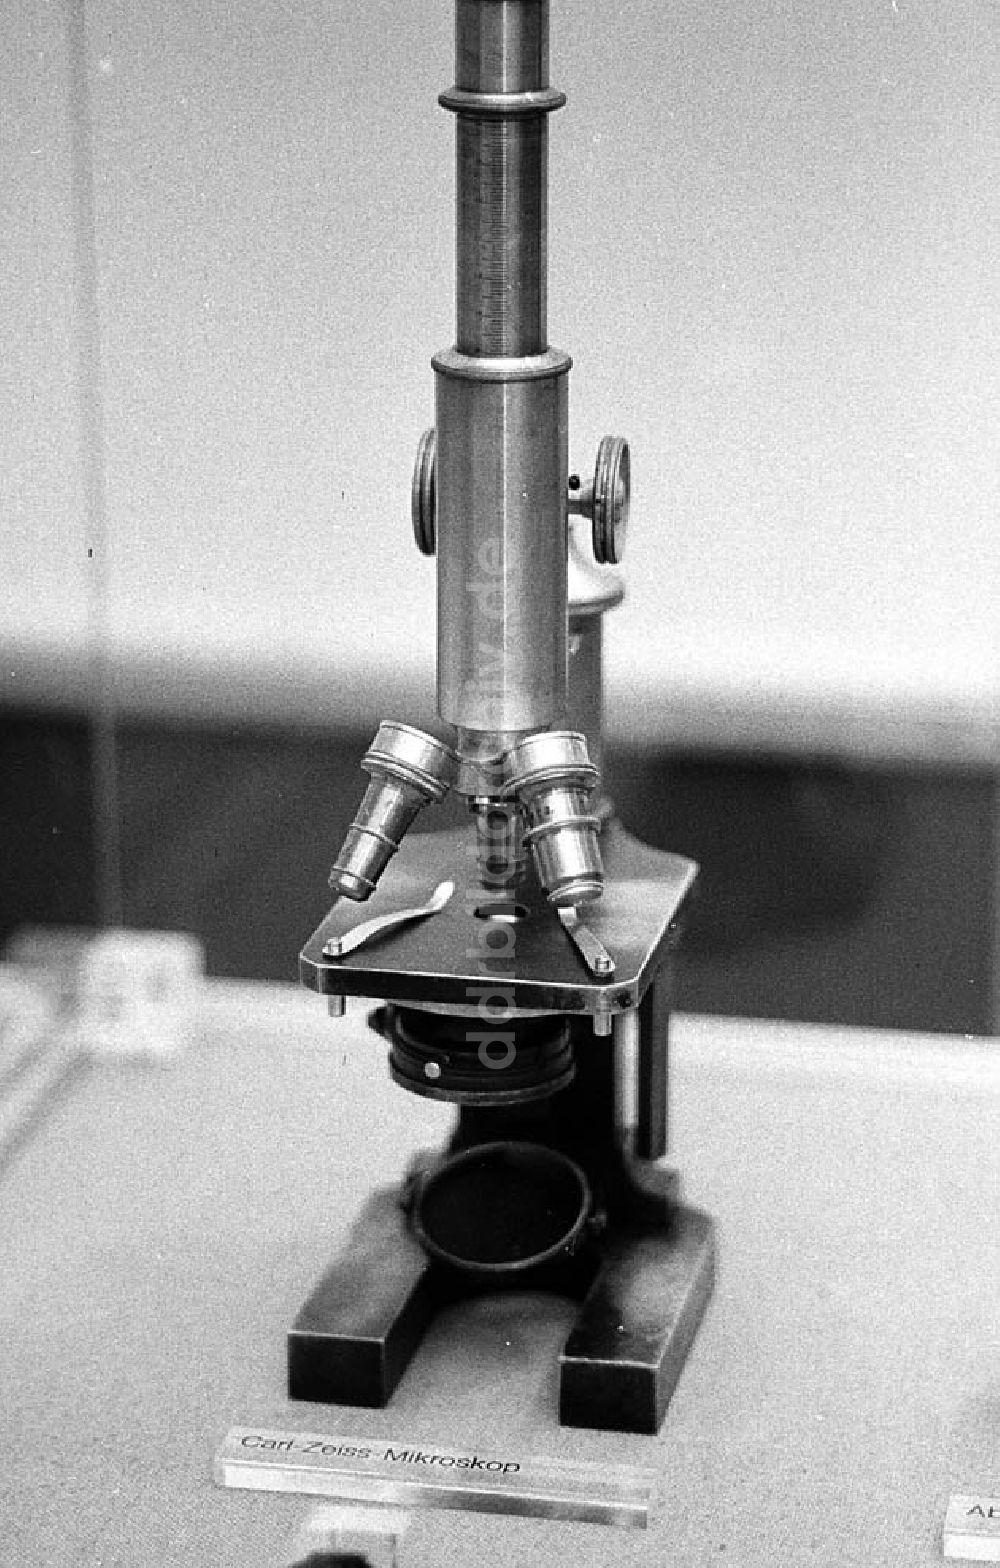 Berlin-Mitte: Robert-Koch-Ausstellung am Fernsehturm in Berlin-Mitte, Carl-Zeiss-Mikroskop Umschlagnr